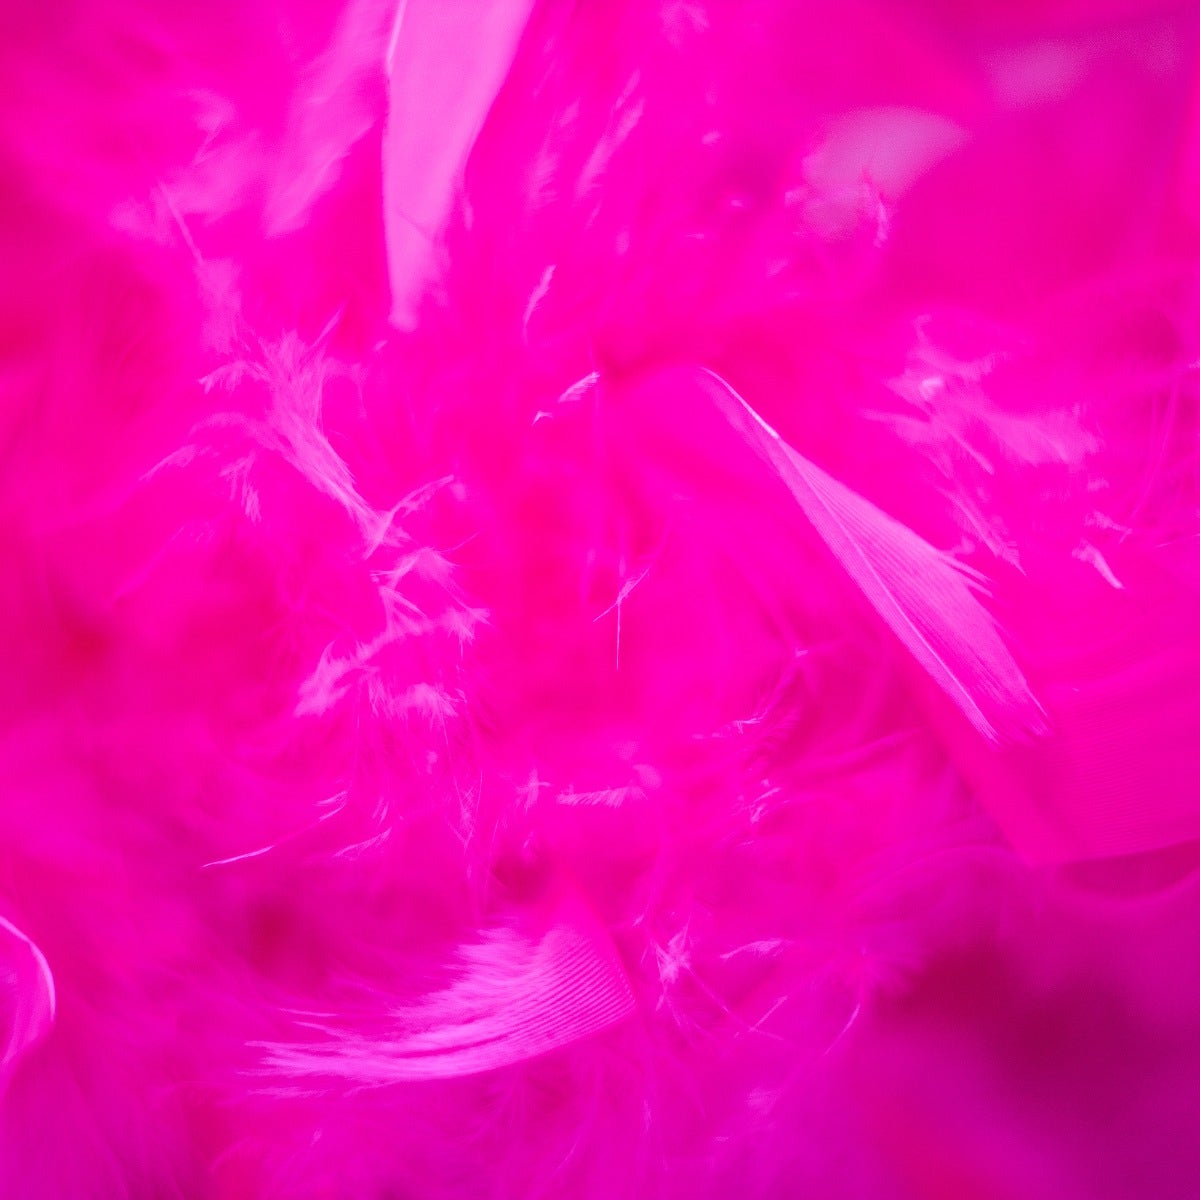 Chandelle Feather Boa - Medium Weight - Shocking Pink